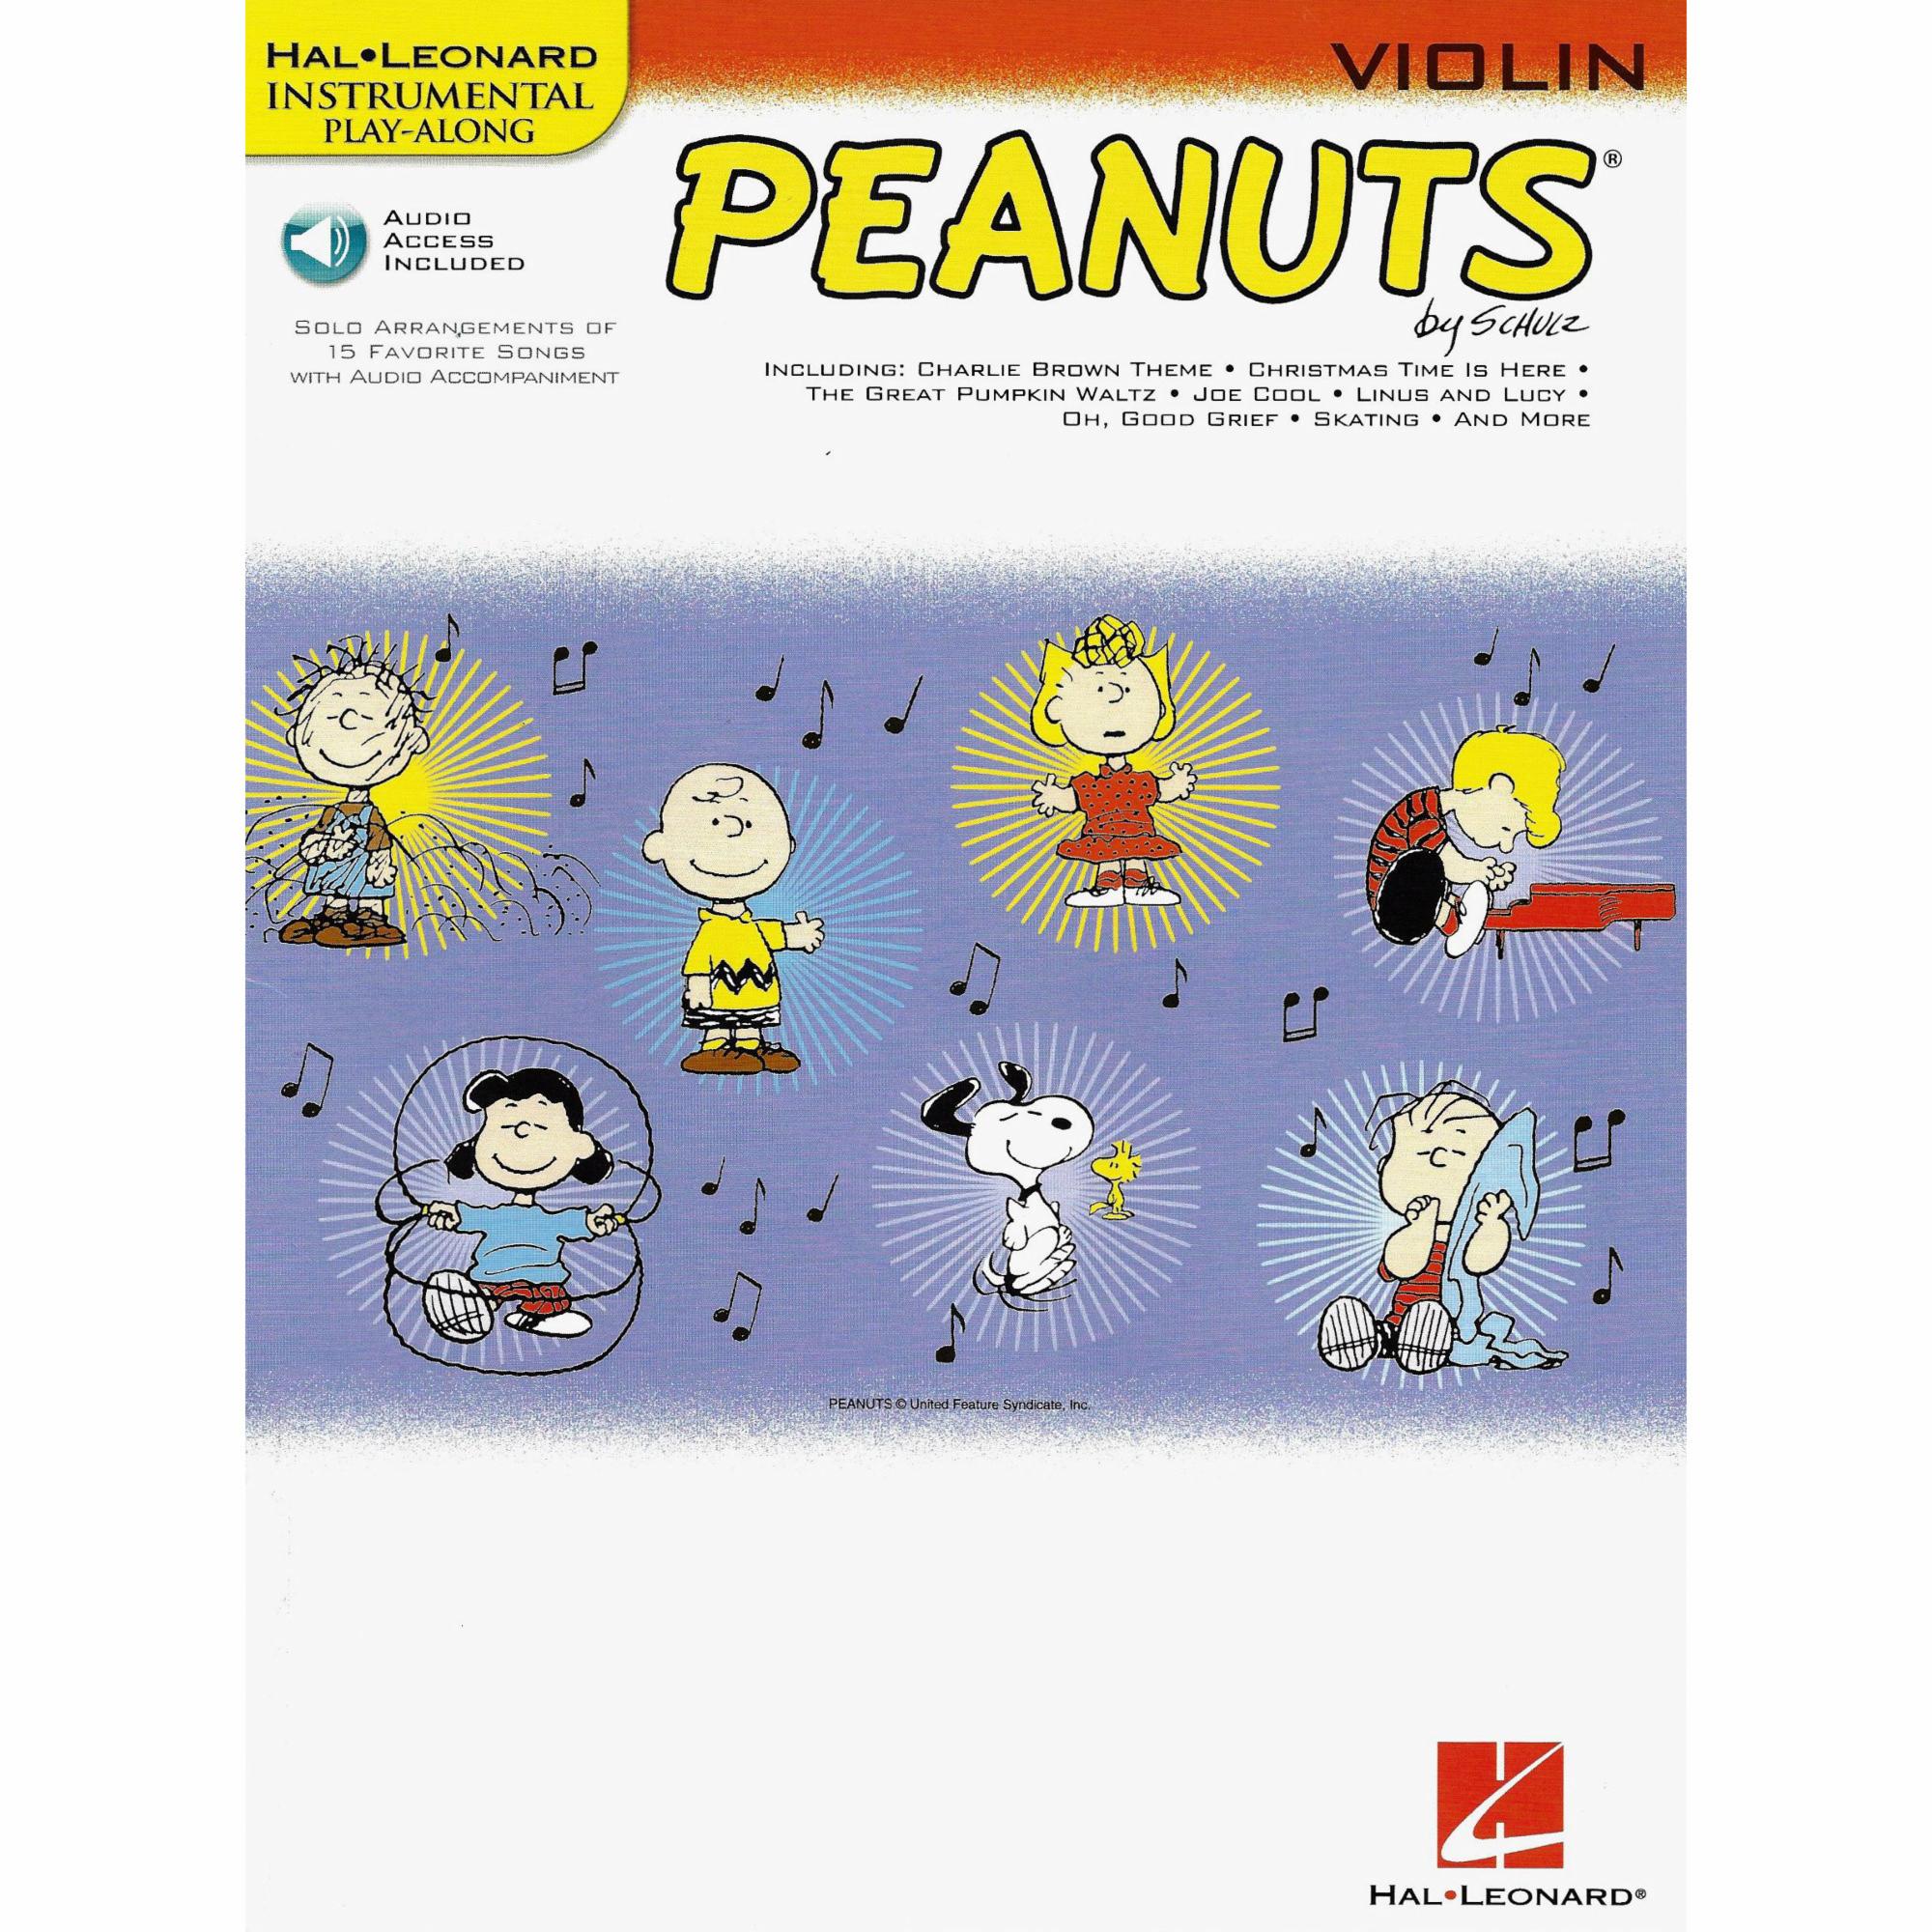 Peanuts for Cello